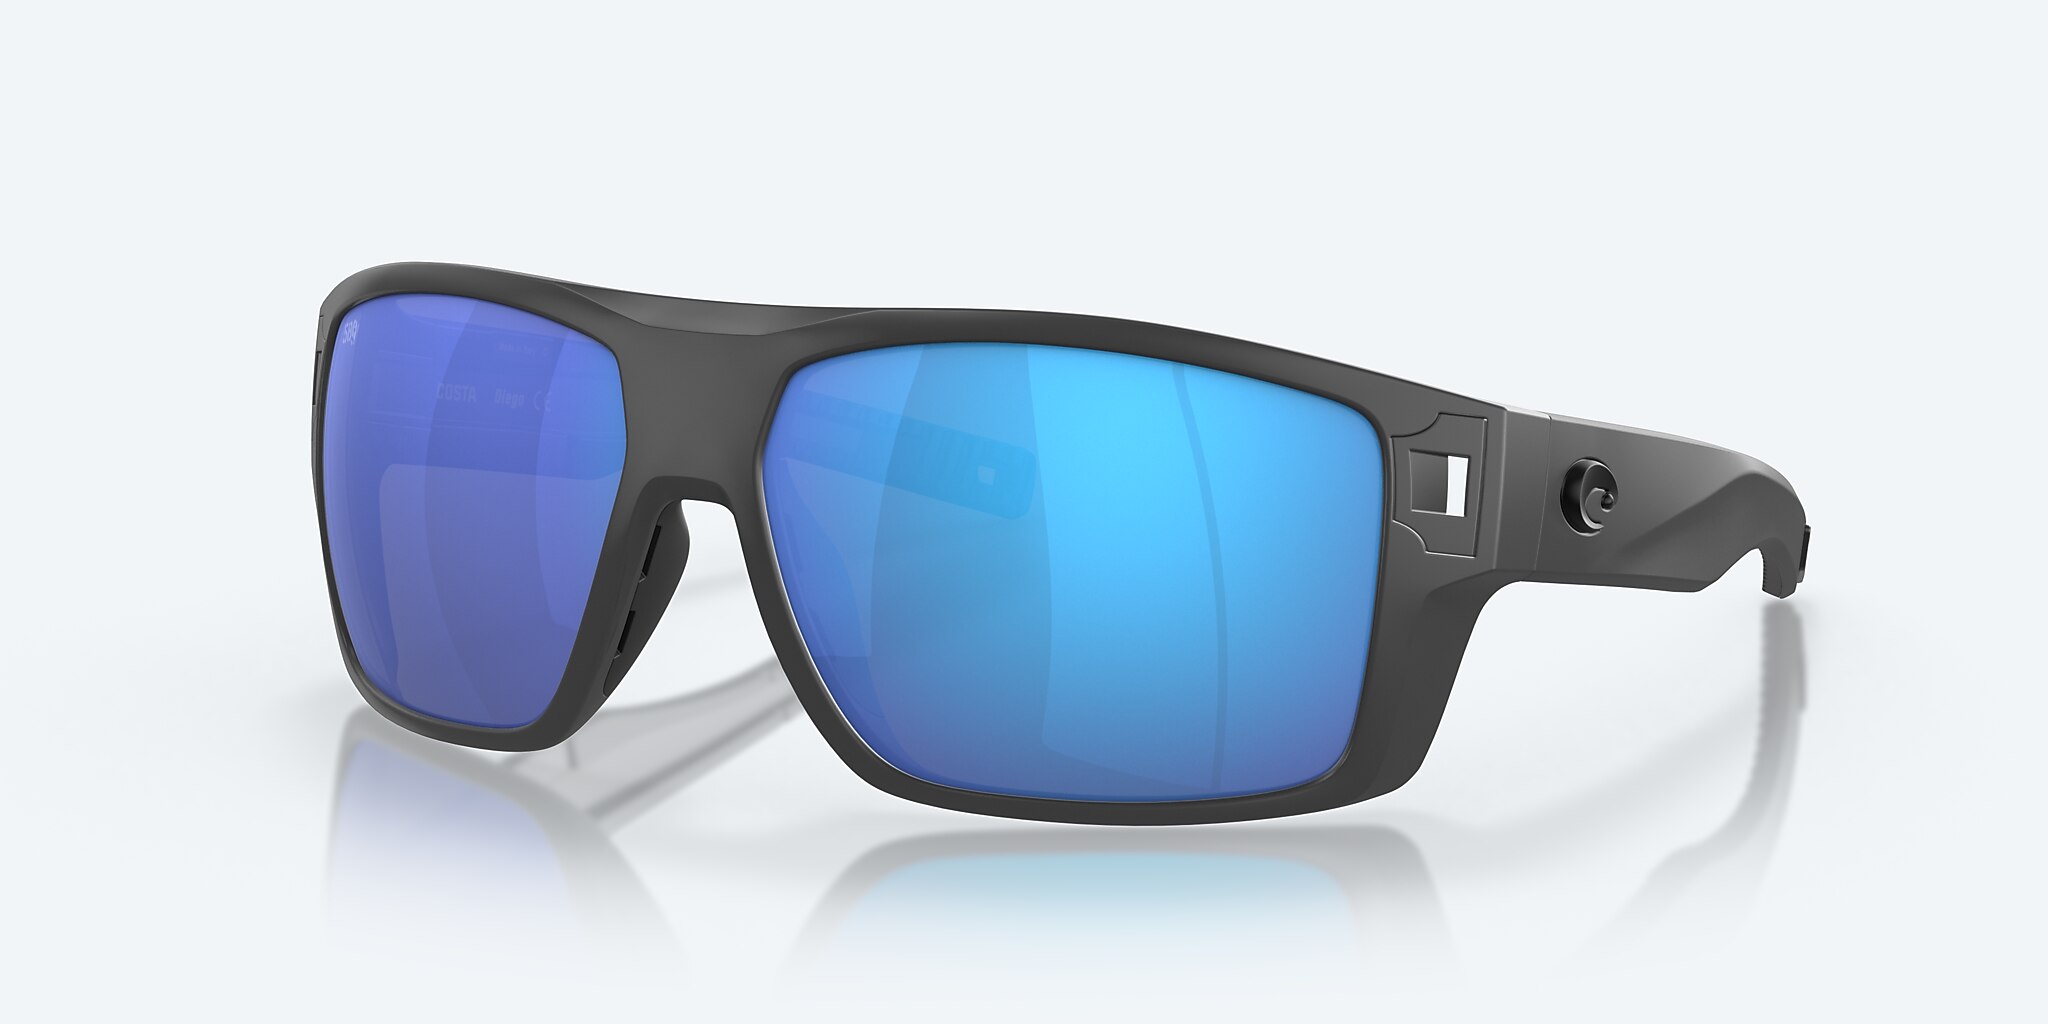 Diego Polarized Mirror Costa Del Sunglasses in Mar® Blue 